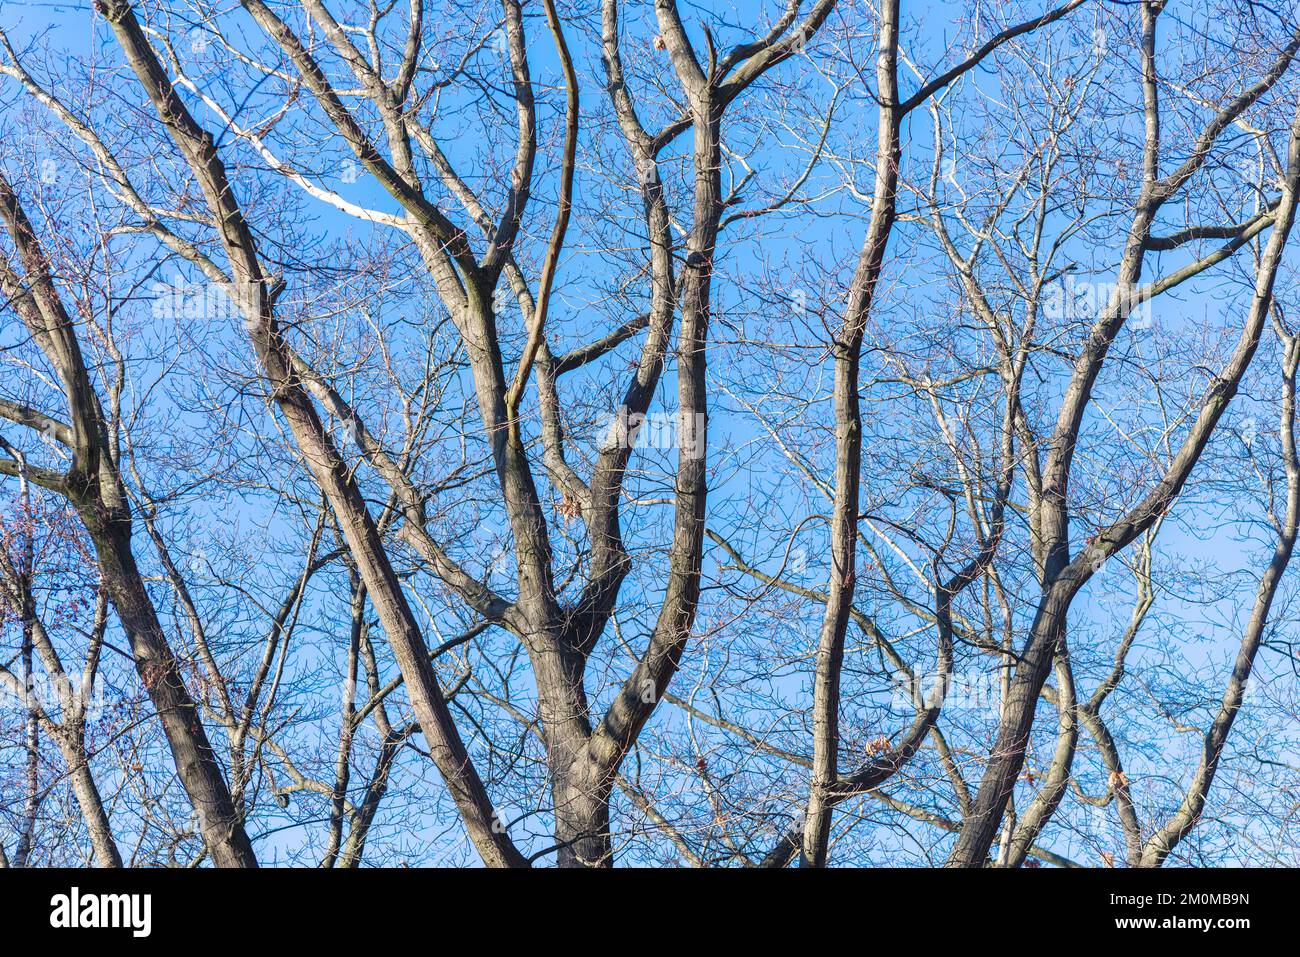 Baumzweige, die zu einem großen Baum gehören, vor einem blauen Himmel Stockfoto